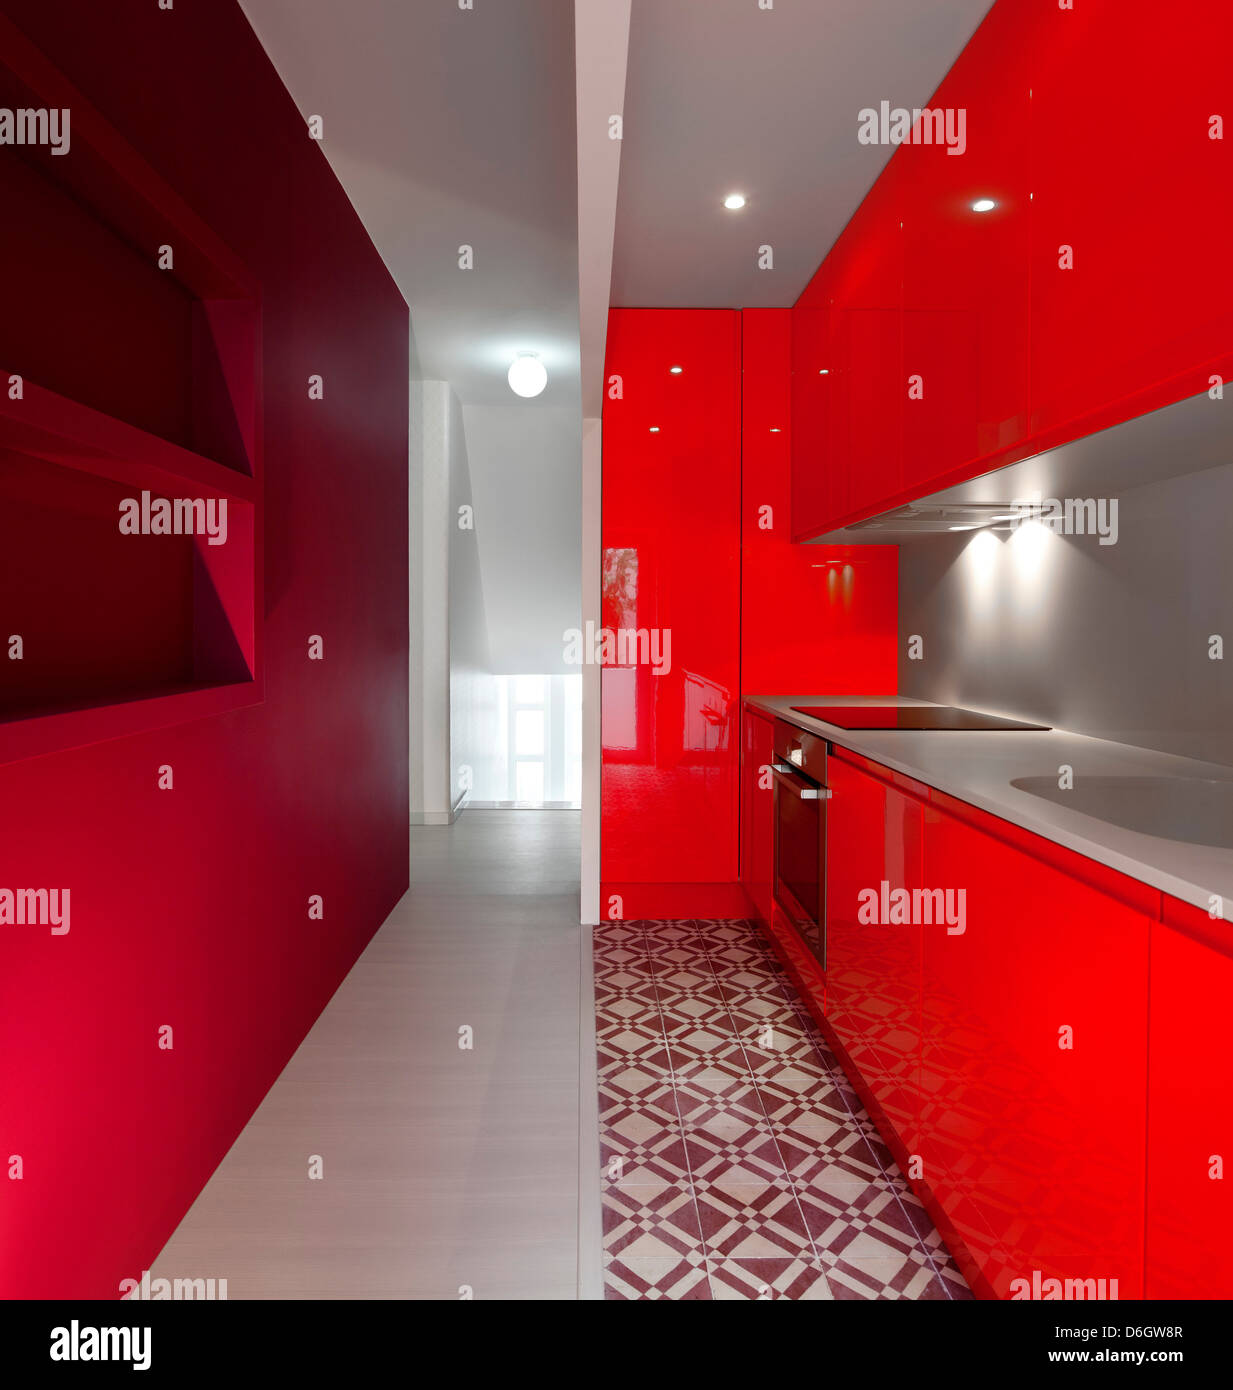 Casa em Almada, Almada, Portugal. Architect: Pedro Gadanho, 2012. View through red coloured bespoke kitchenette. Stock Photo